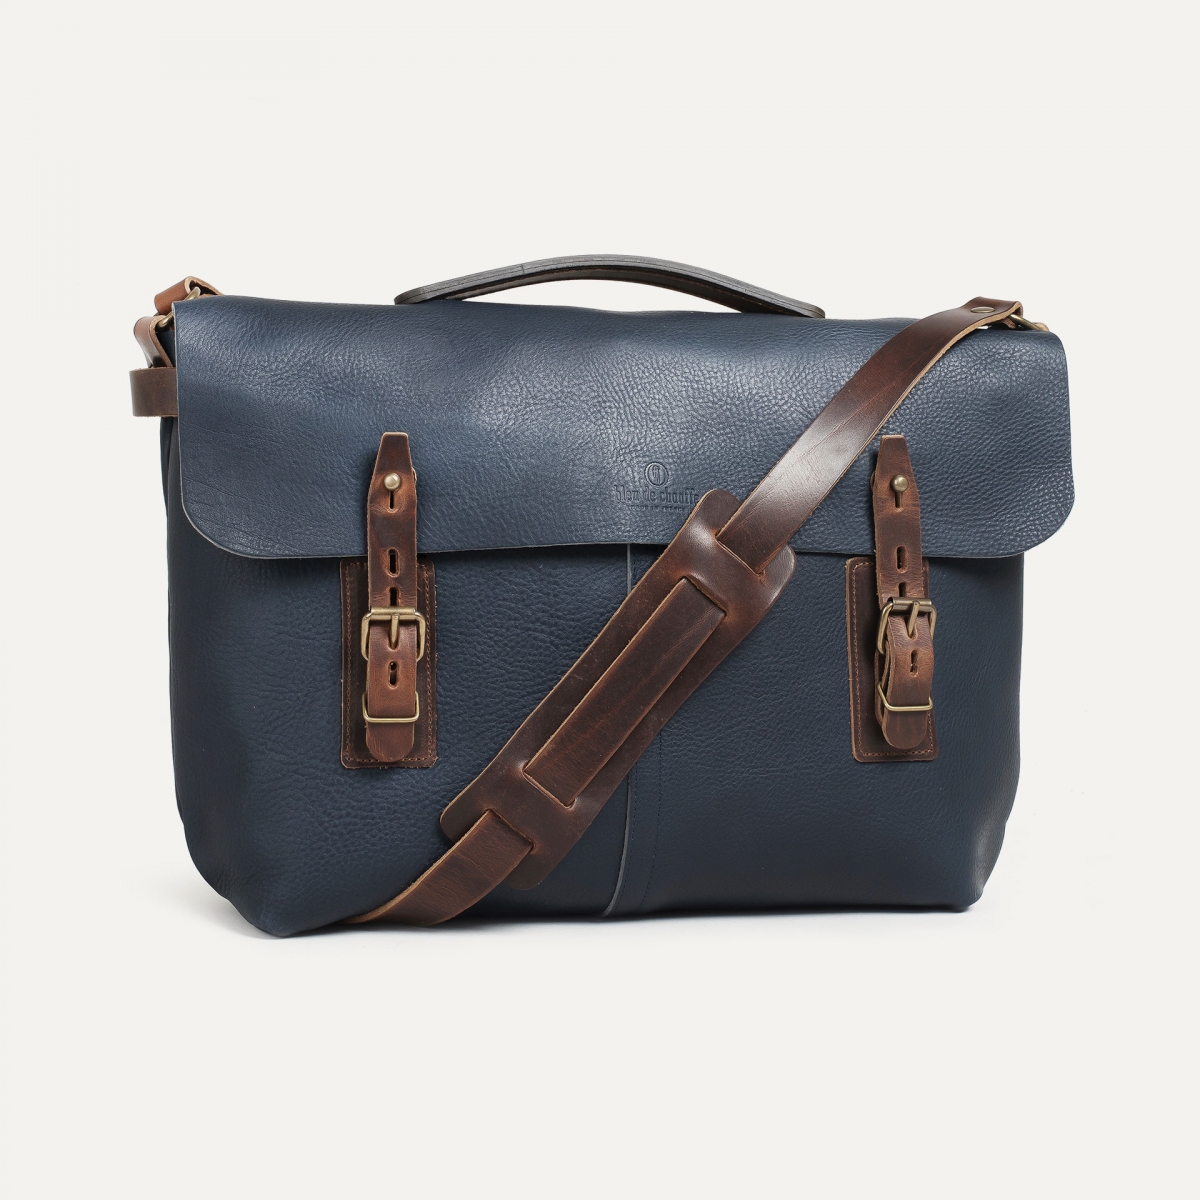 Lucien Satchel bag - Navy Blue- Men's bag - Leather satchel bag - Made ...